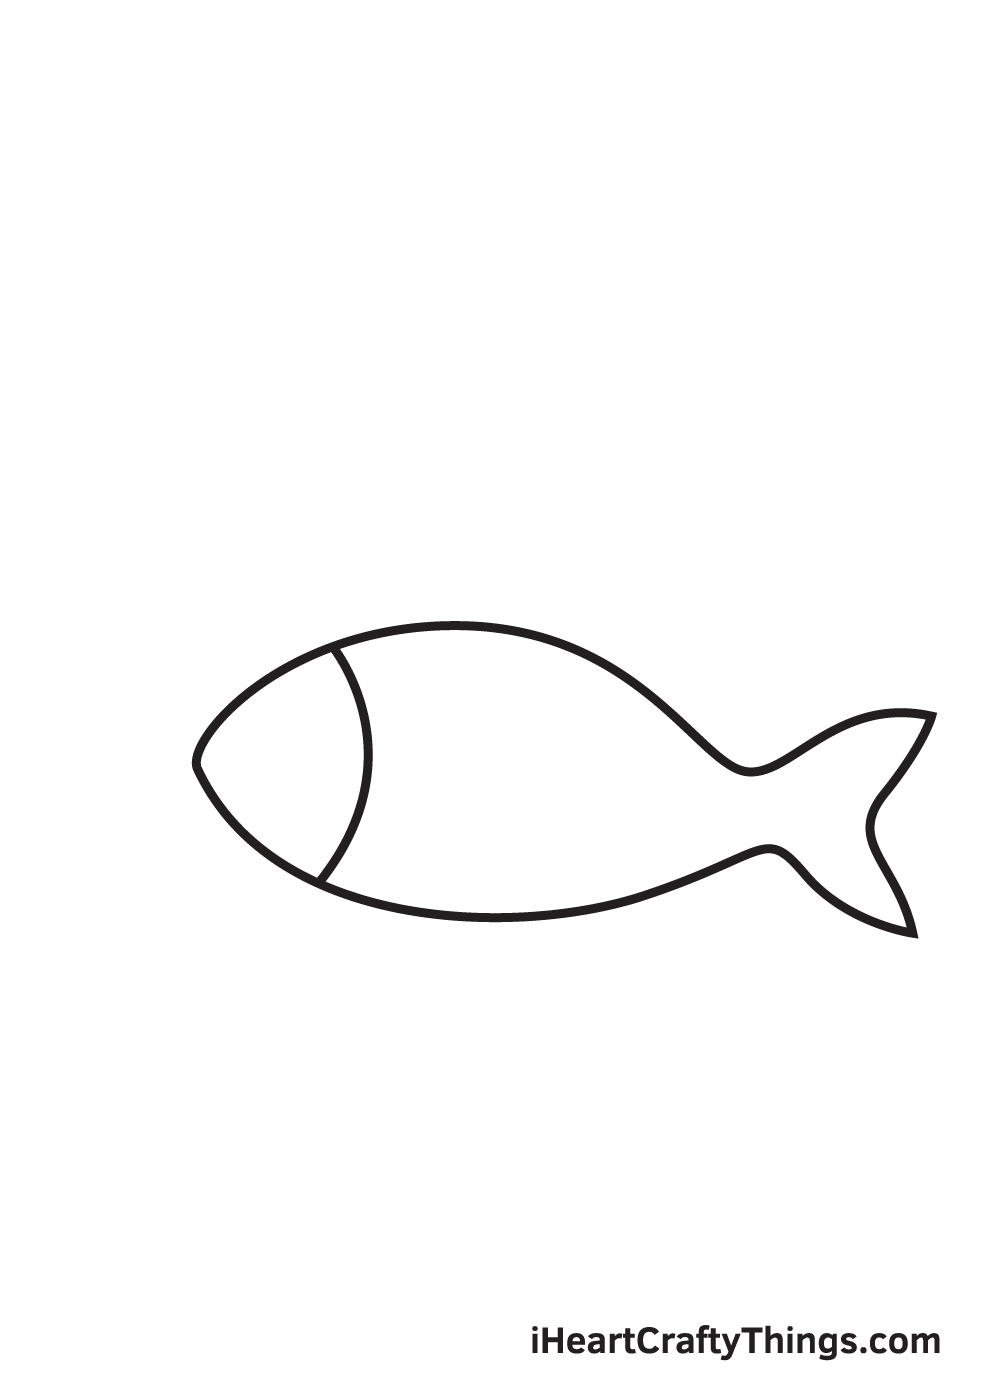 fish drawing - step 2